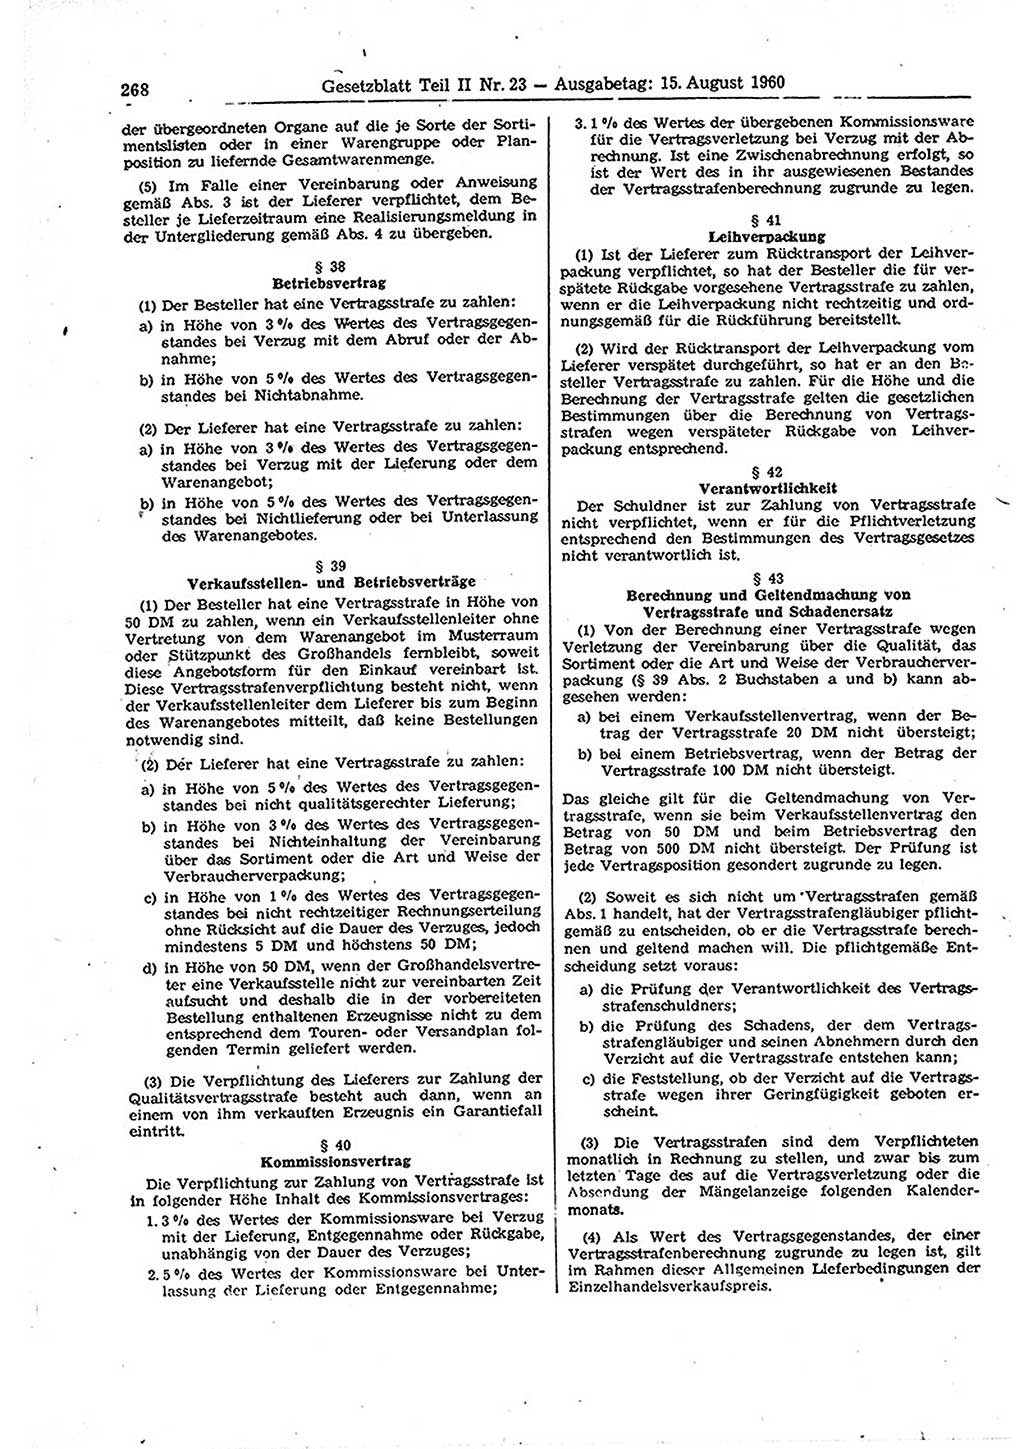 Gesetzblatt (GBl.) der Deutschen Demokratischen Republik (DDR) Teil ⅠⅠ 1960, Seite 268 (GBl. DDR ⅠⅠ 1960, S. 268)